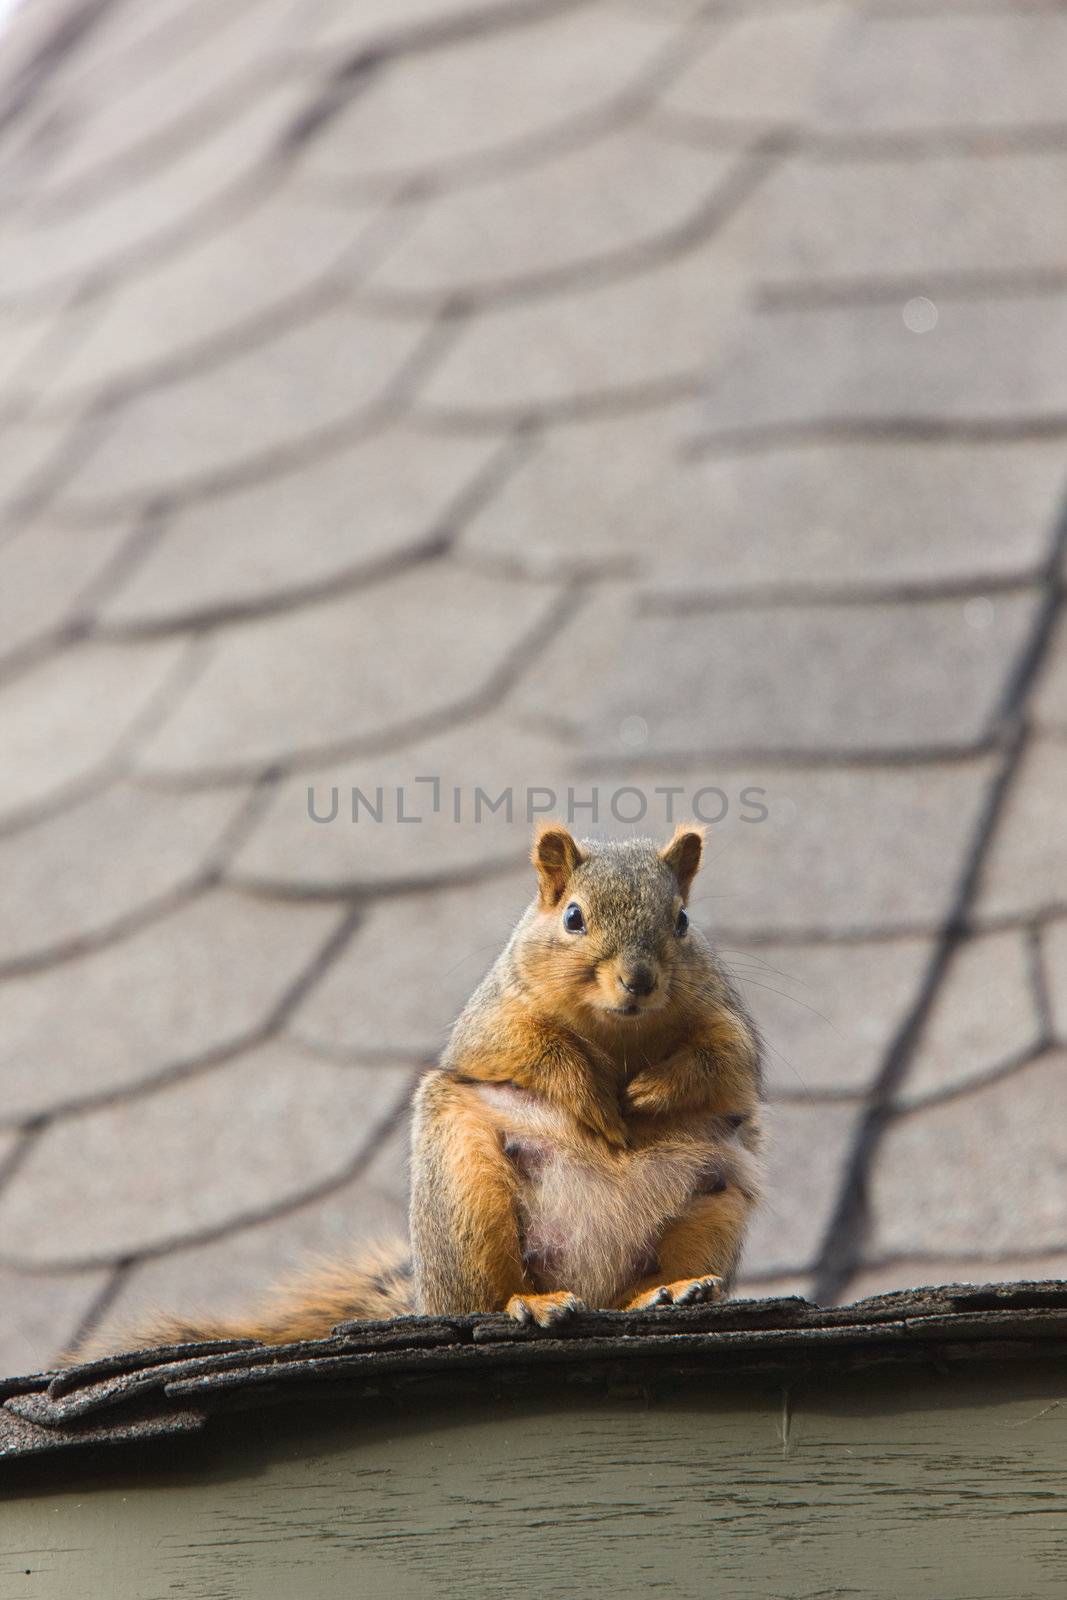 Squirrel on Rooftop Saskatchewan